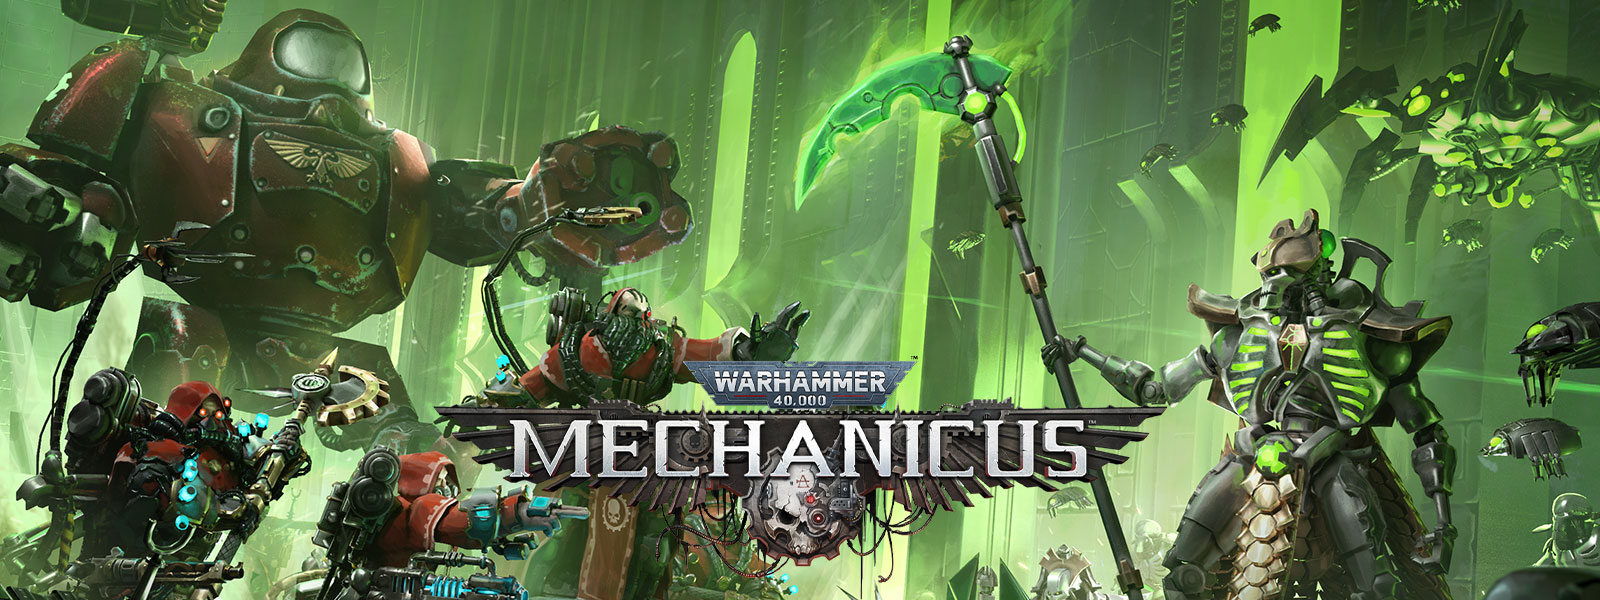 Warhammer 40,000: Mechanicus, des armées équipées de hautes technologiques se préparent pour la bataille.